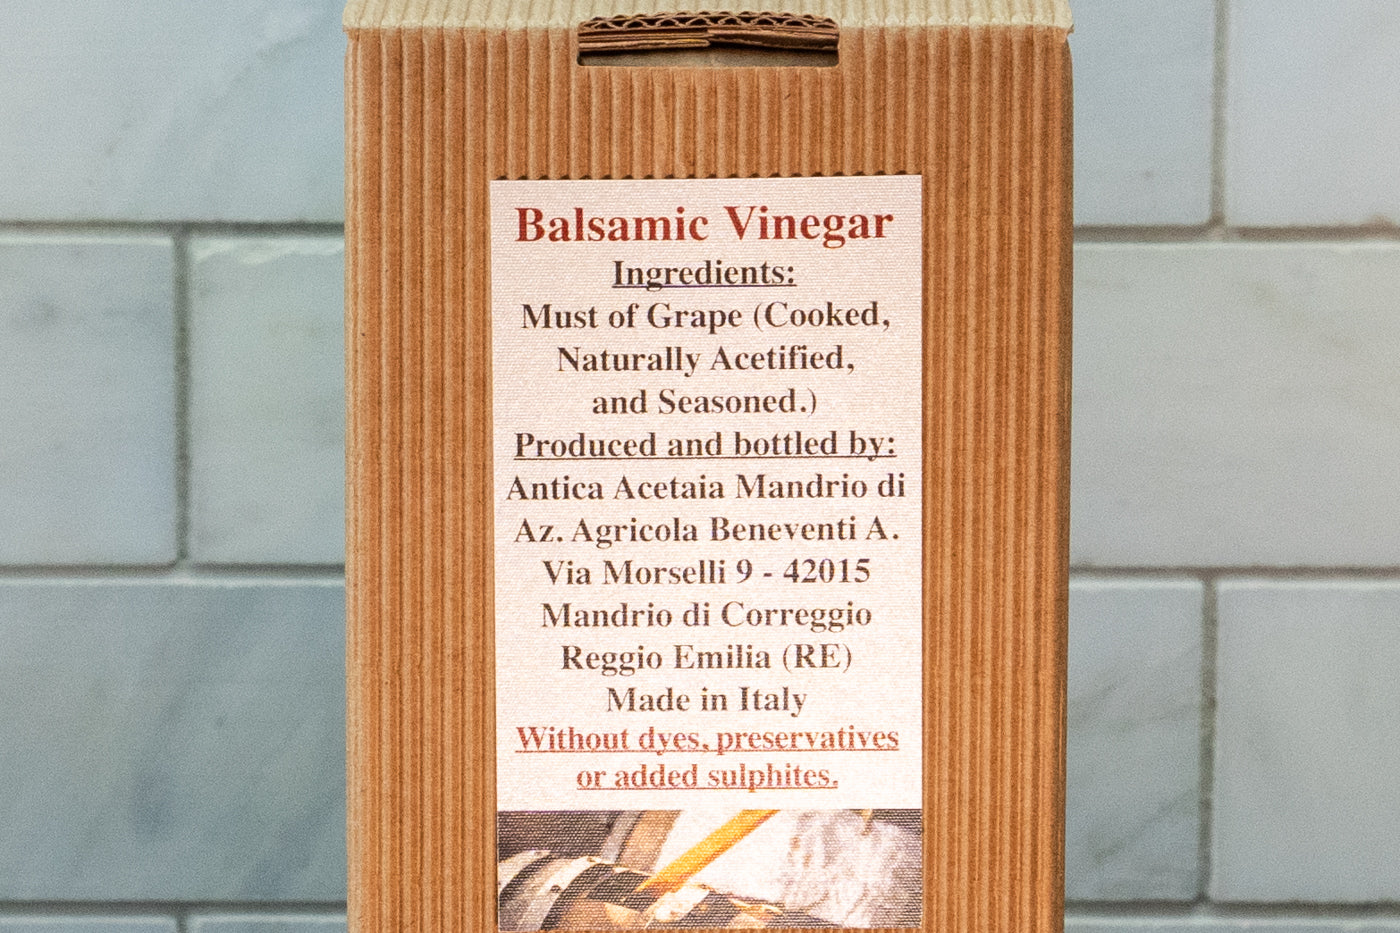 12 Year Seasoned Aged Balsamic Vinegar Ingredients